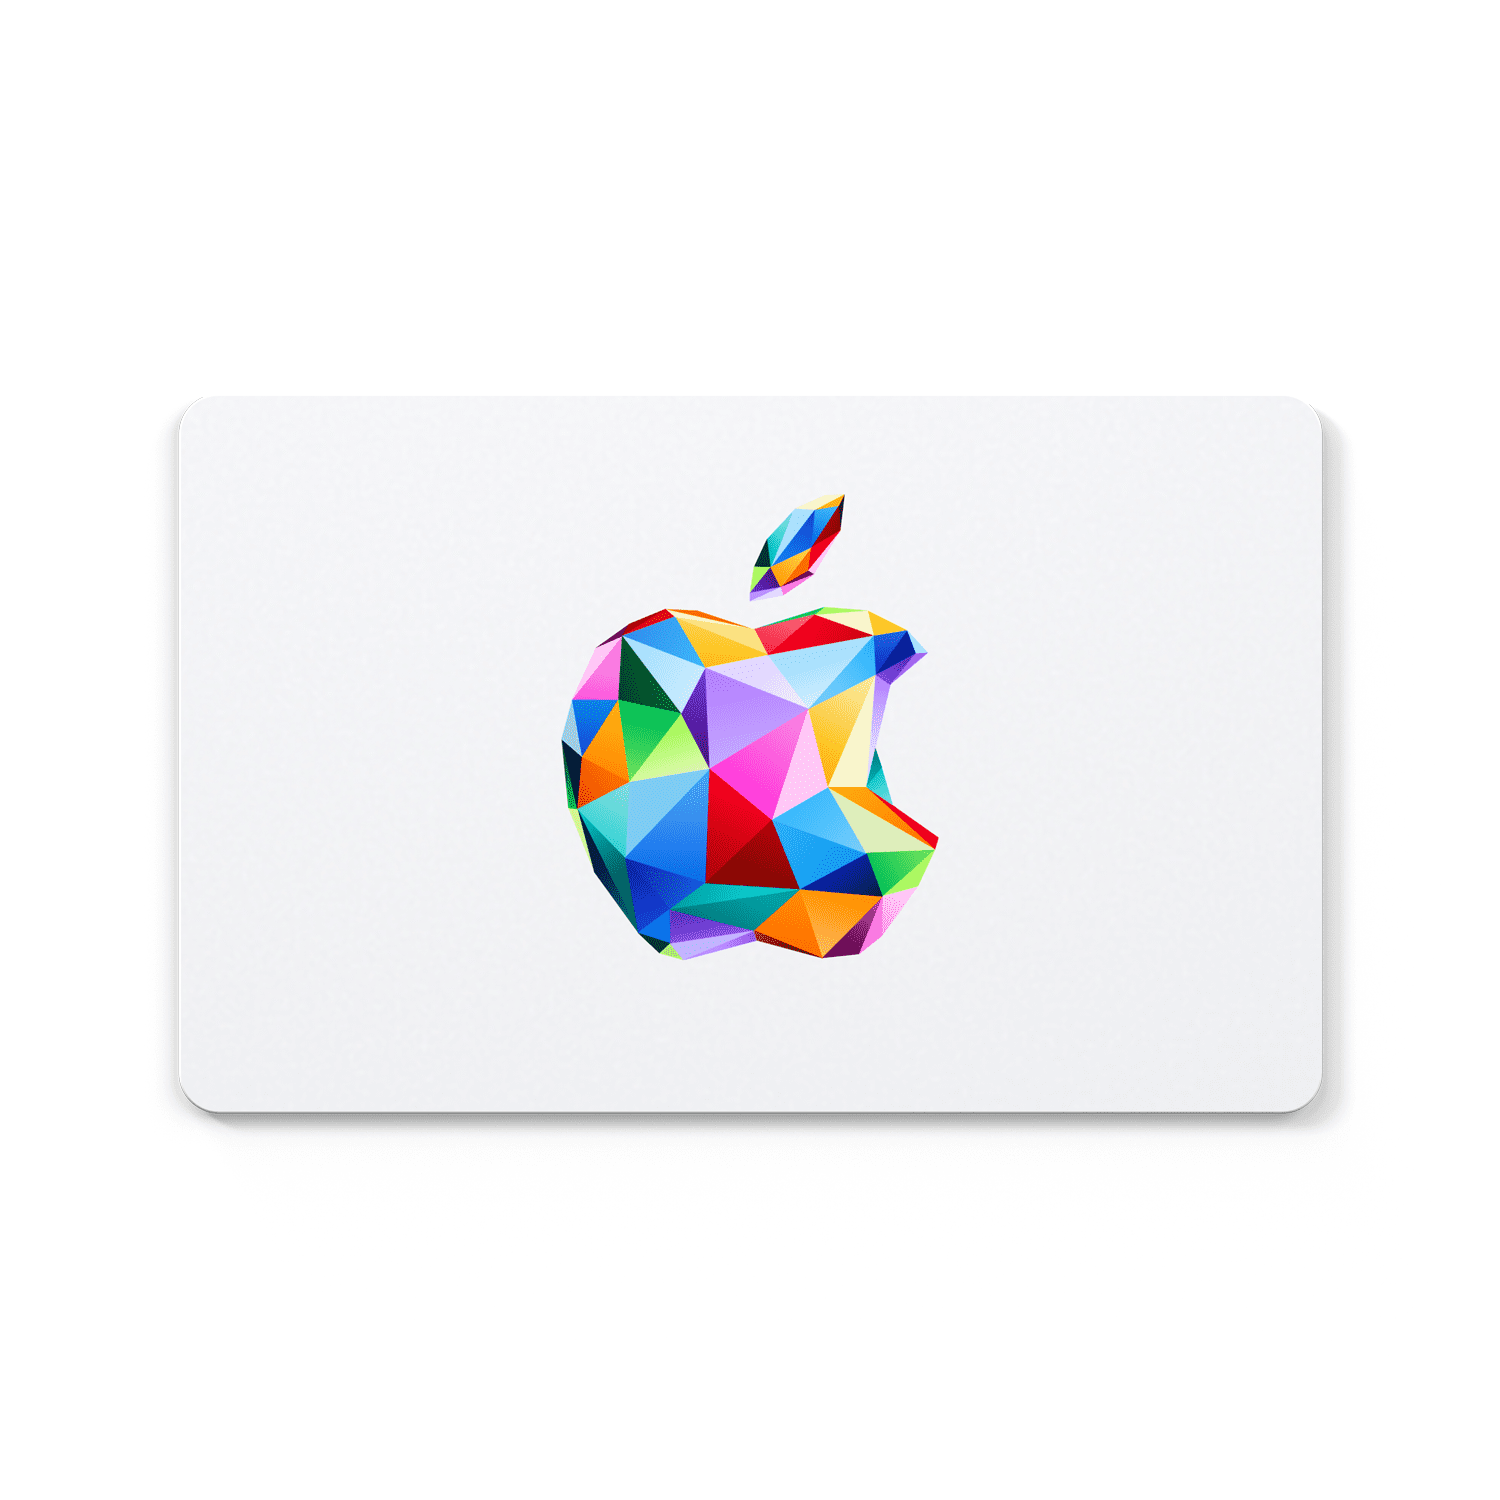 Likken Schrijft een rapport aansluiten $100 Apple Gift Card (Email Delivery) - Walmart.com